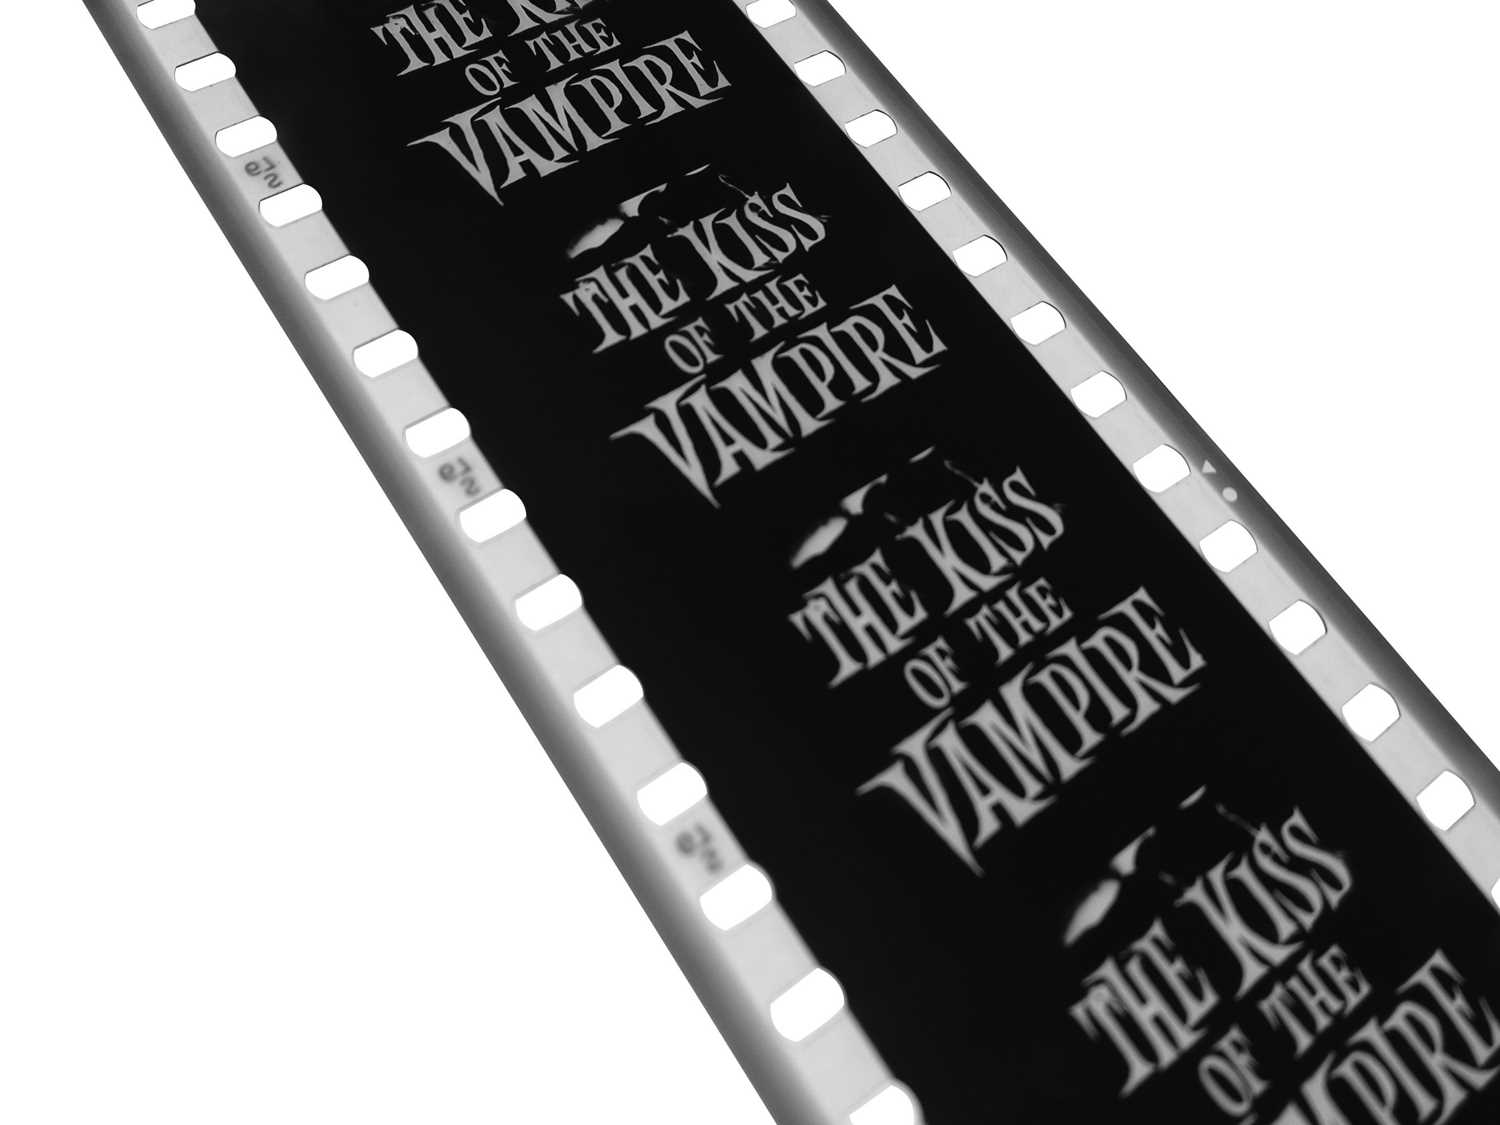 Kiss Of The Vampire (Hammer Horror) (1963) - Image 5 of 6